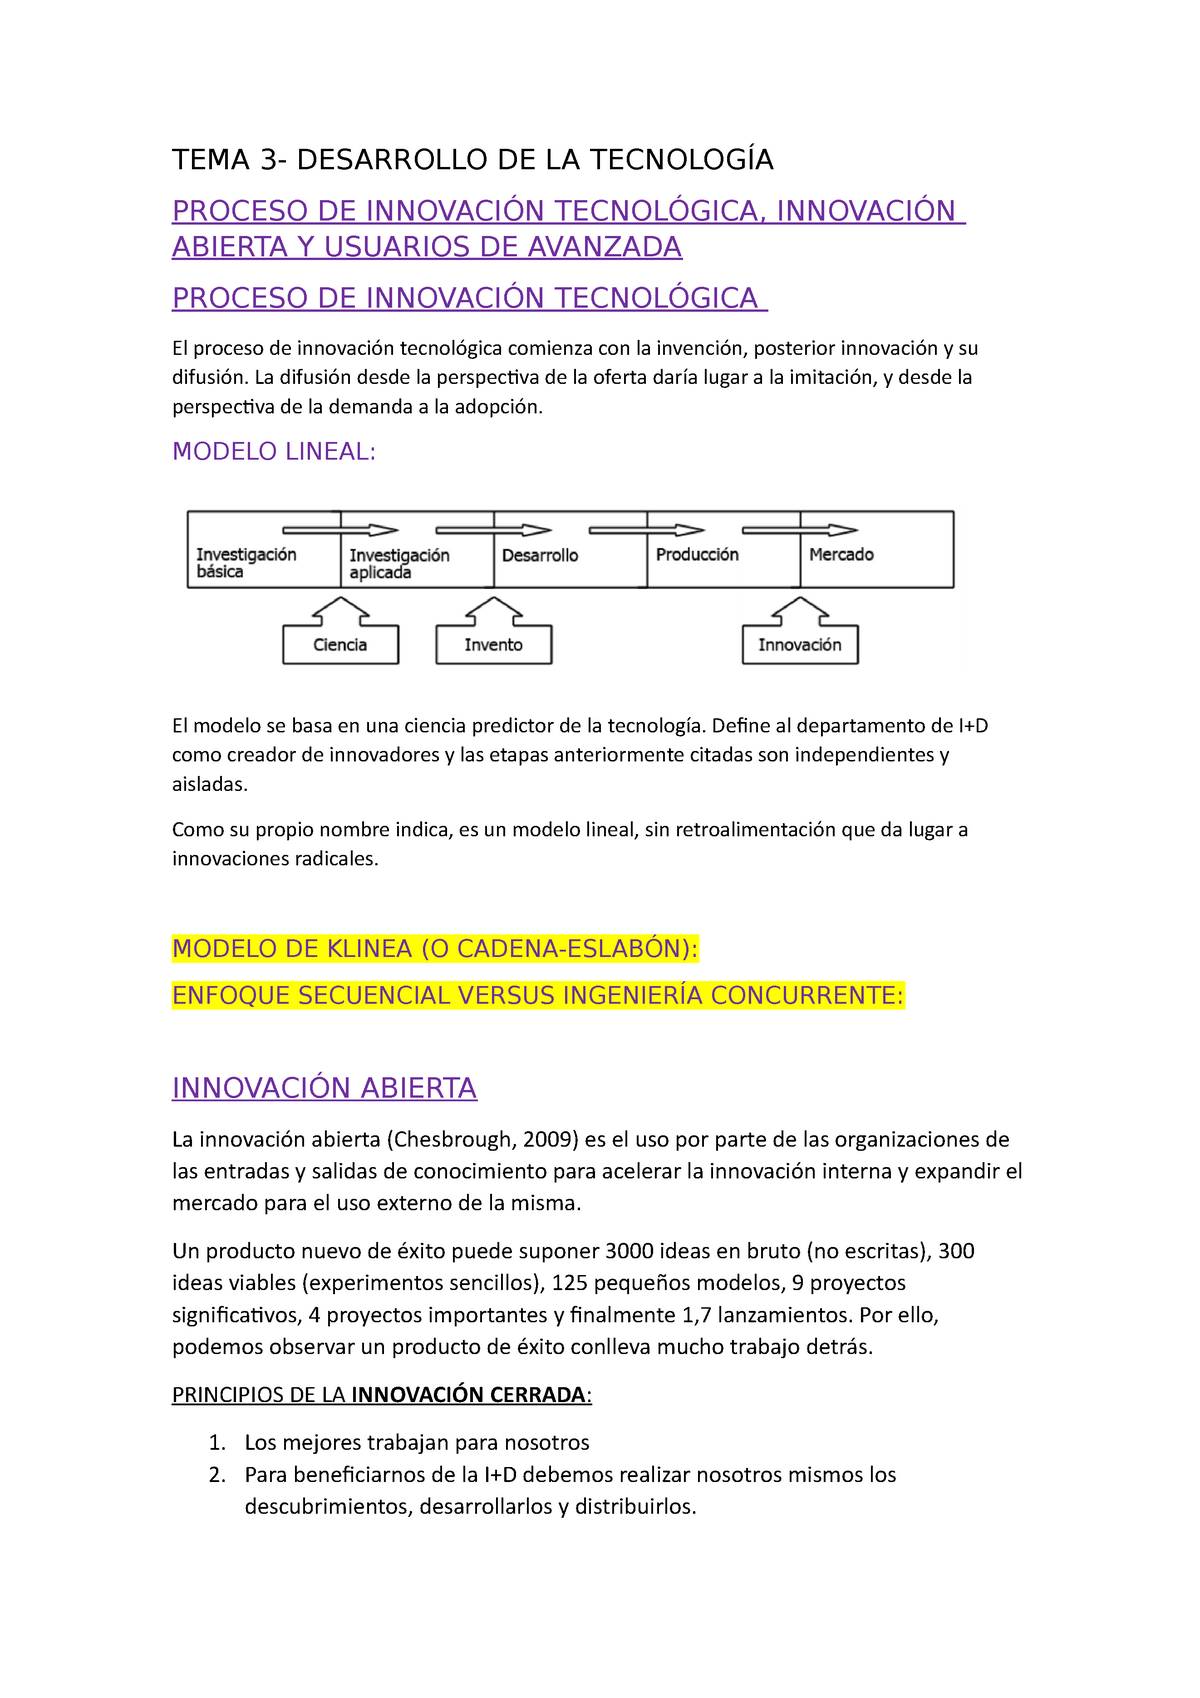 TEMA 3 innovación ade - TEMA 3- DESARROLLO DE LA TECNOLOGÍA PROCESO DE  INNOVACIÓN TECNOLÓGICA, - Studocu